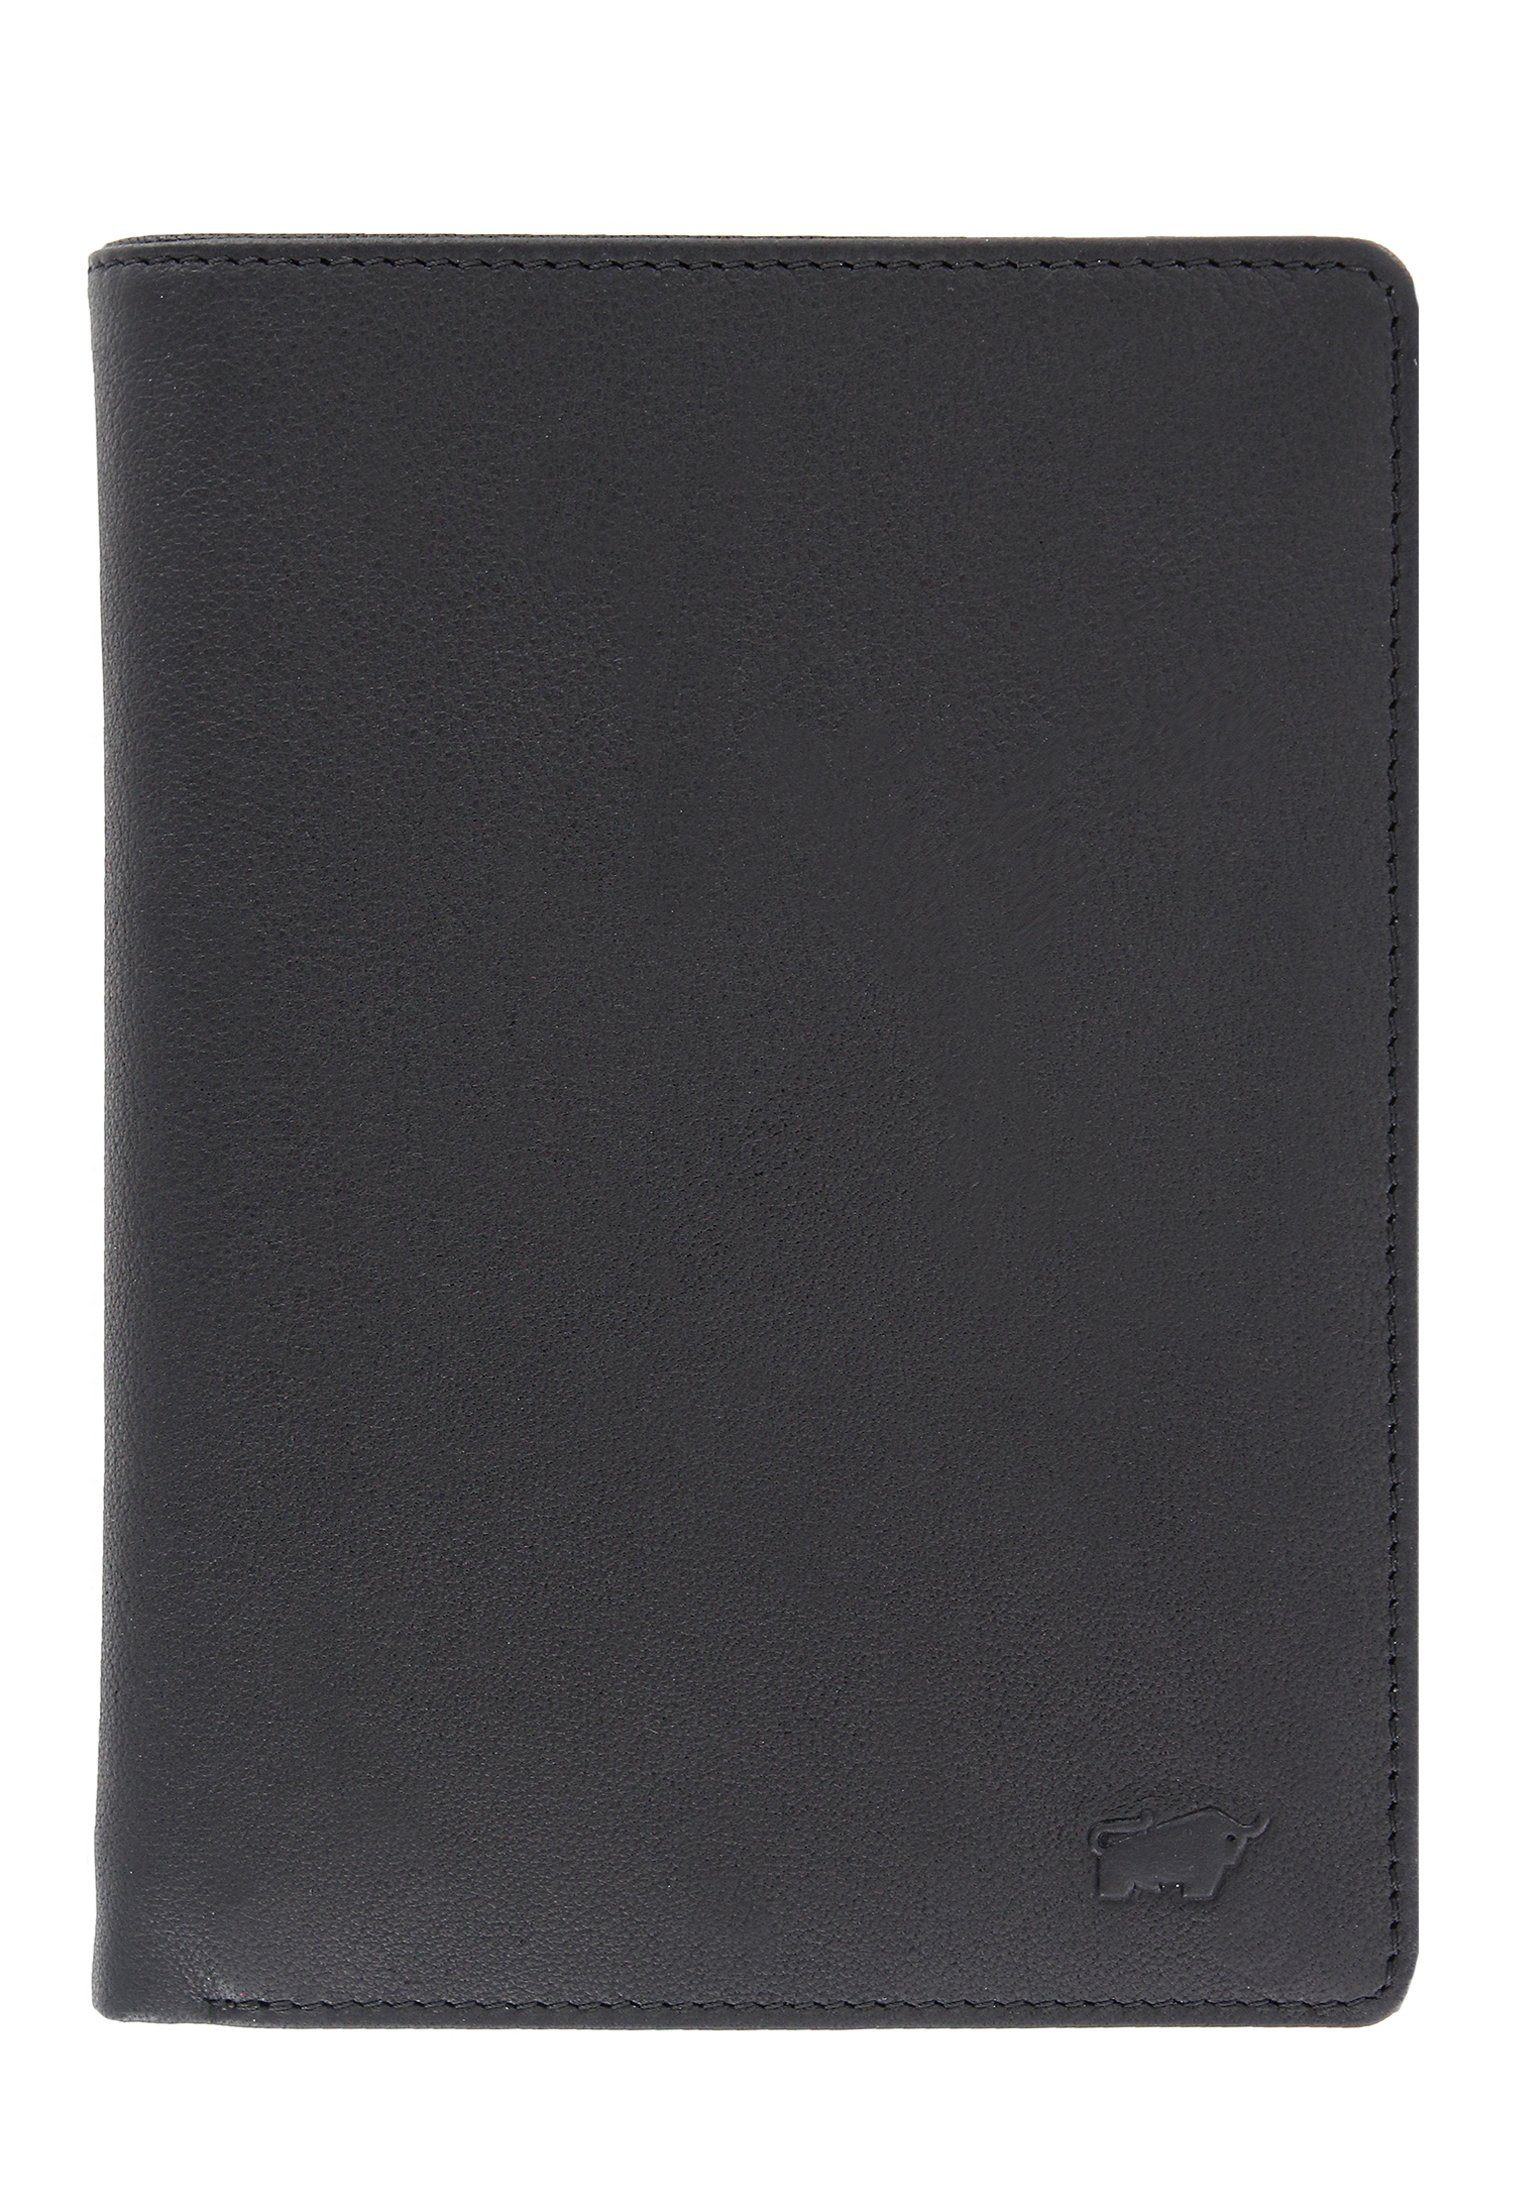 ARIZONA Braun Stauraum, in Brieftasche viel schwarz, 20CS Brieftasche mit Germany Büffel Made 2.0